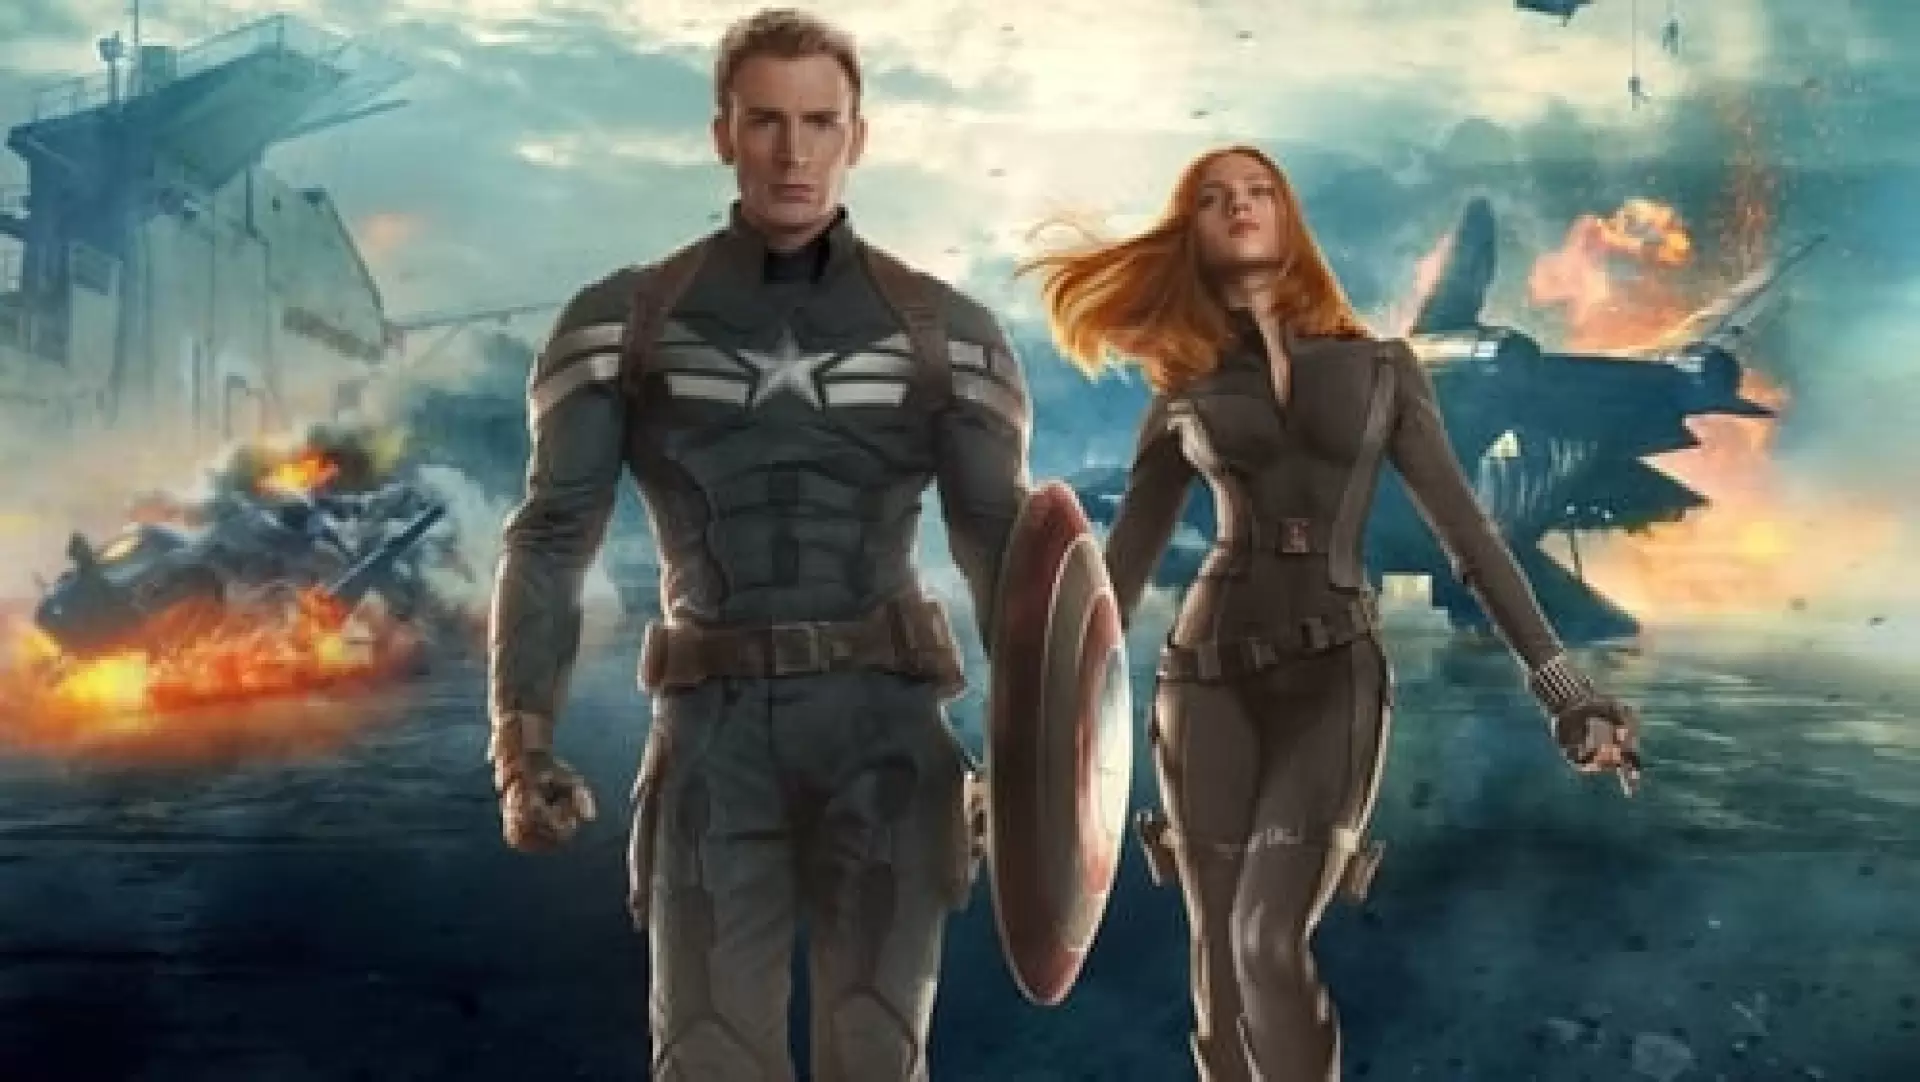 دانلود فیلم Captain America: The Winter Soldier 2014 (کاپیتان آمریکا: سرباز زمستان) با زیرنویس فارسی و تماشای آنلاین